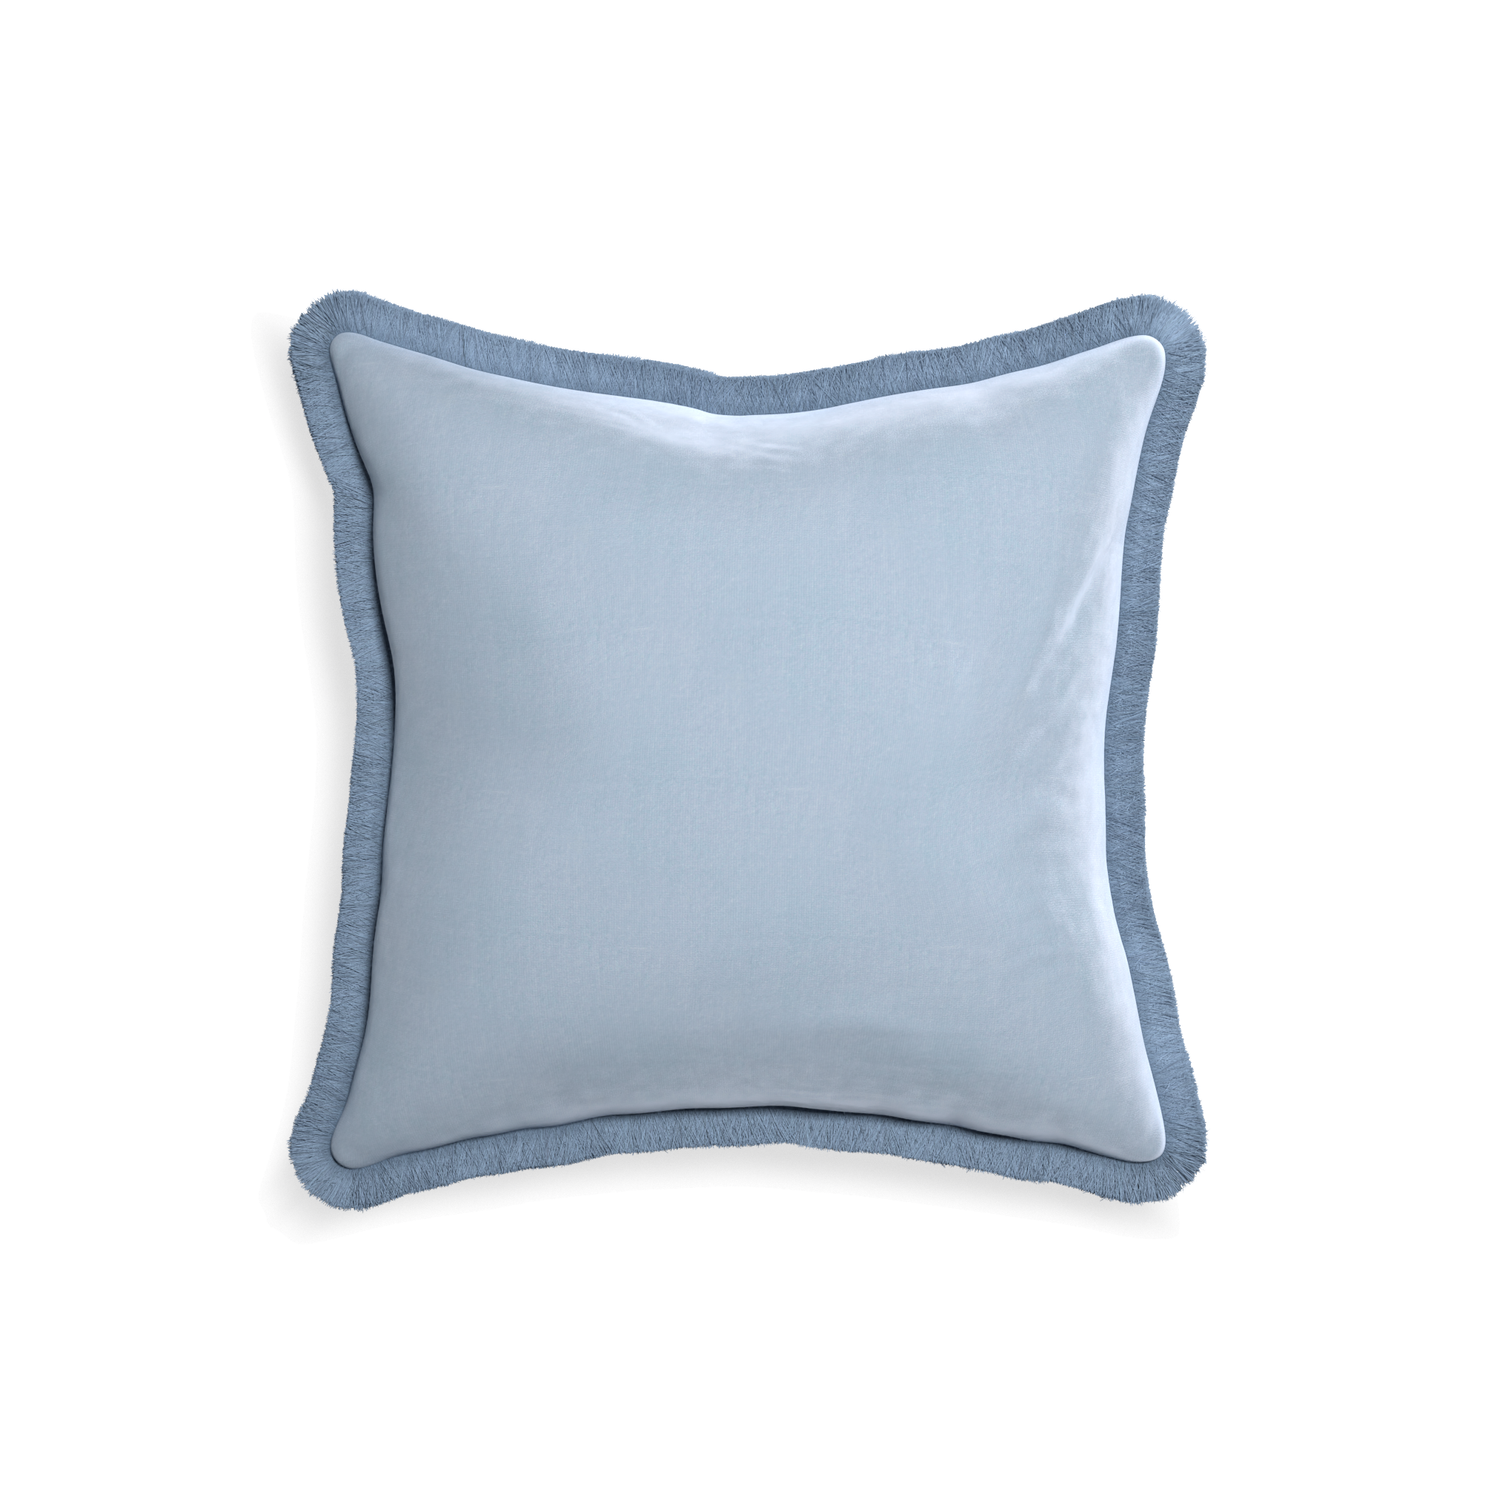 square light blue velvet pillow with sky blue fringe